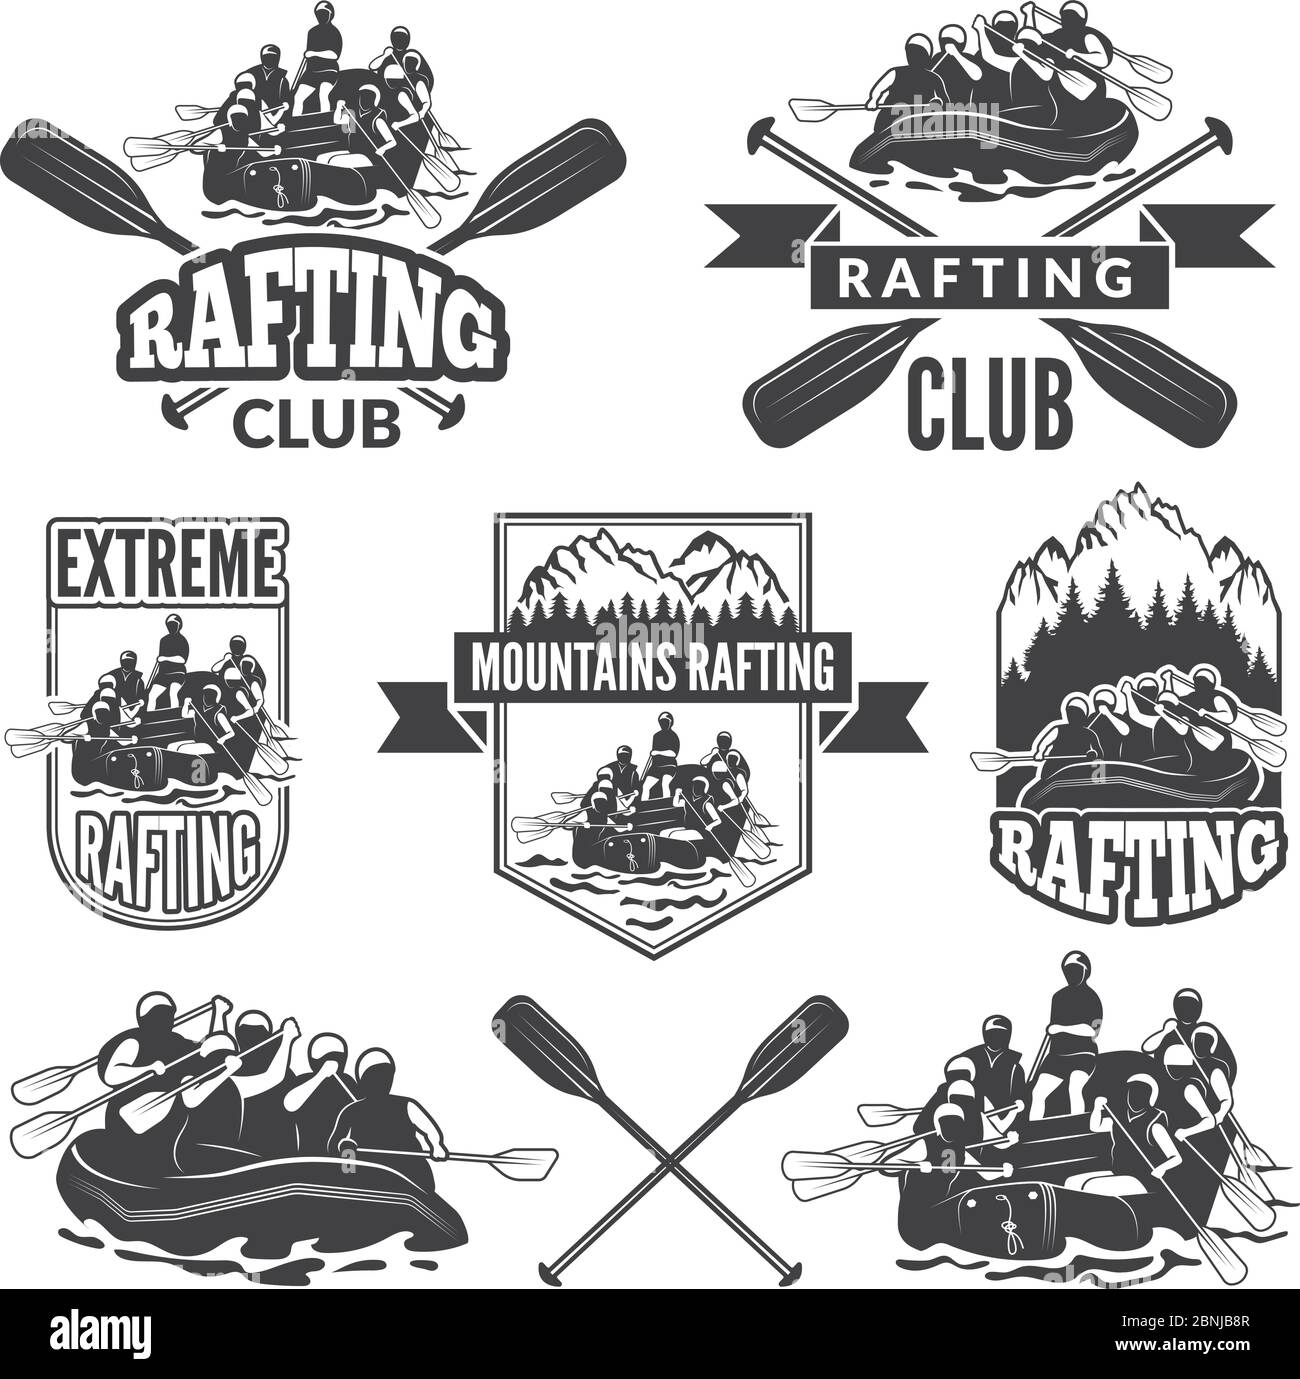 Etiquetas para el club deportivo de deportes acuáticos extremadamente peligrosos. Imágenes vectoriales de rafting Ilustración del Vector